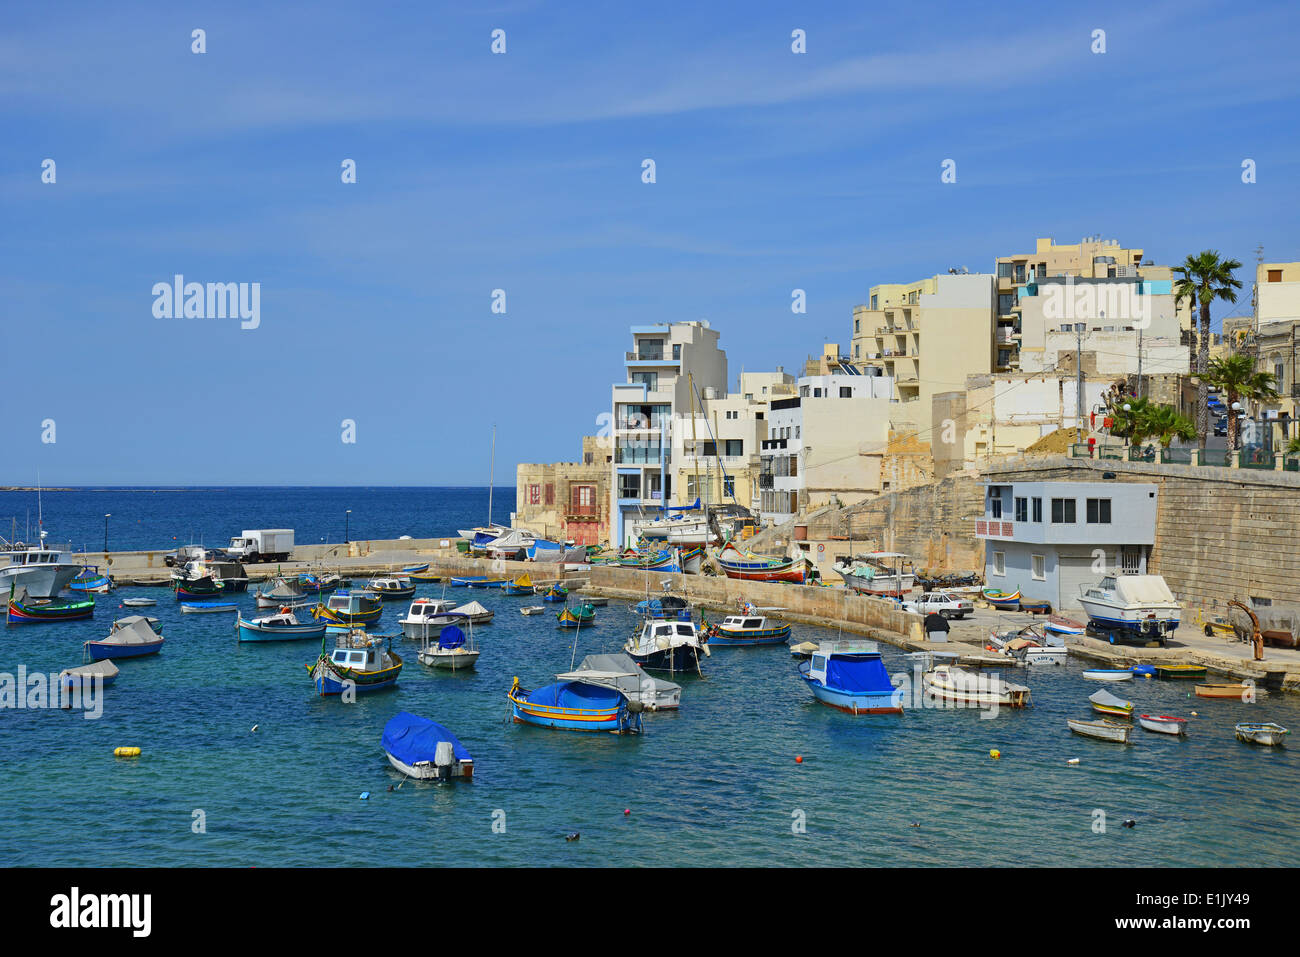 Vue sur le port, Ghan Rasul, Saint Paul's Bay (San Pawl), District Nord, Malte Majjistral Région, République de Malte Banque D'Images